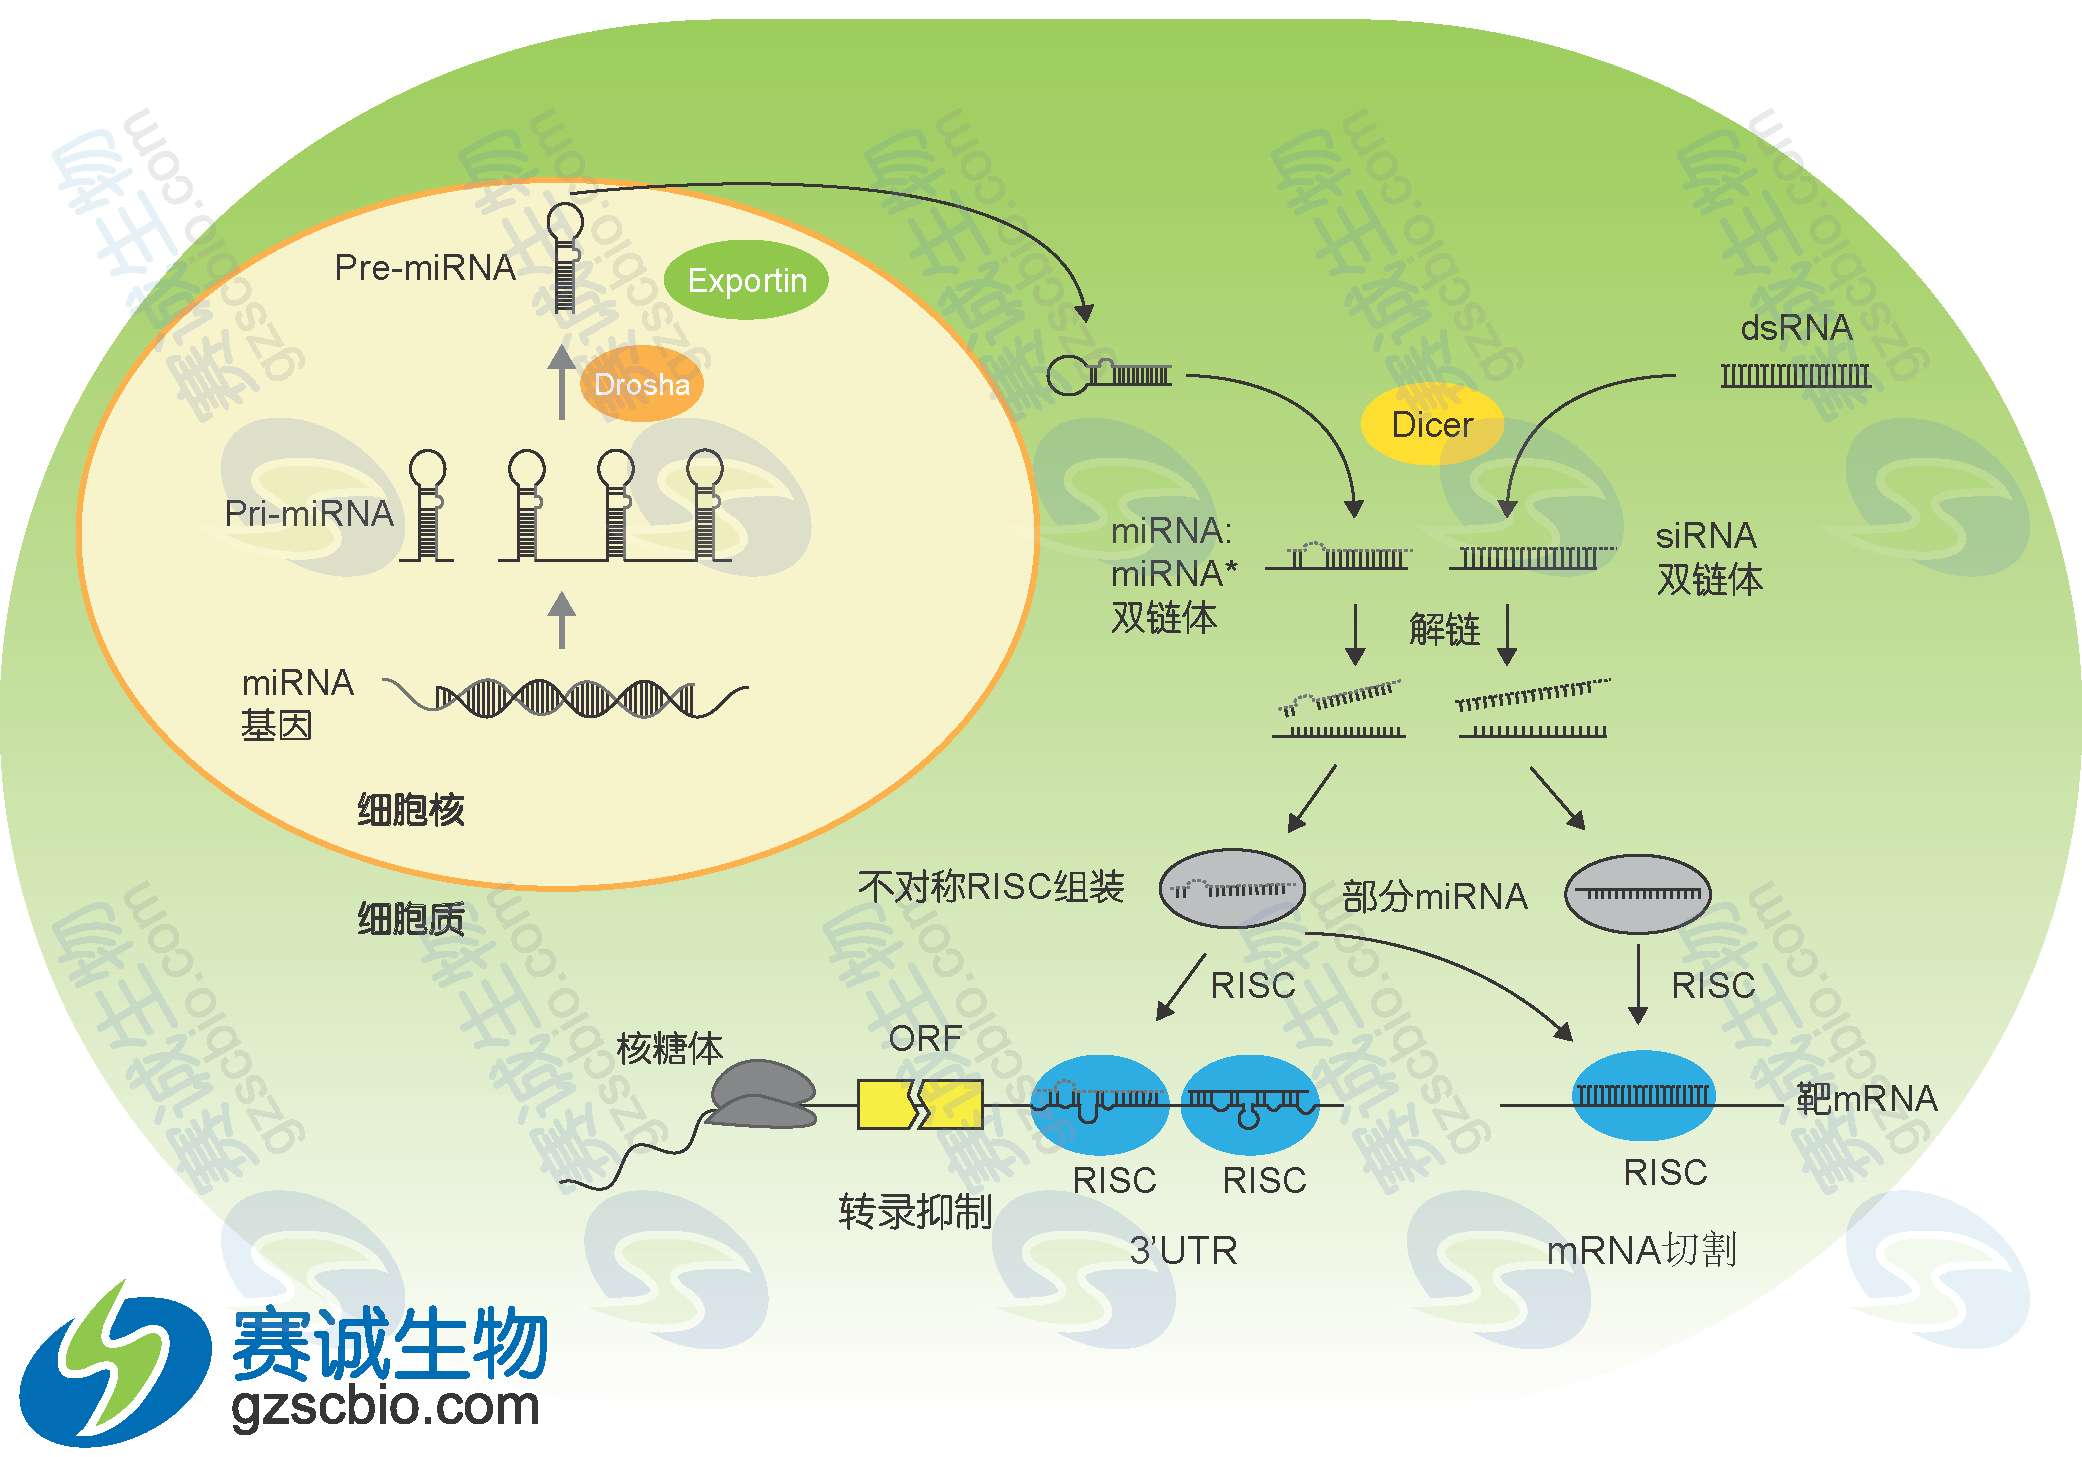 13转录后调控microRNA调控.png